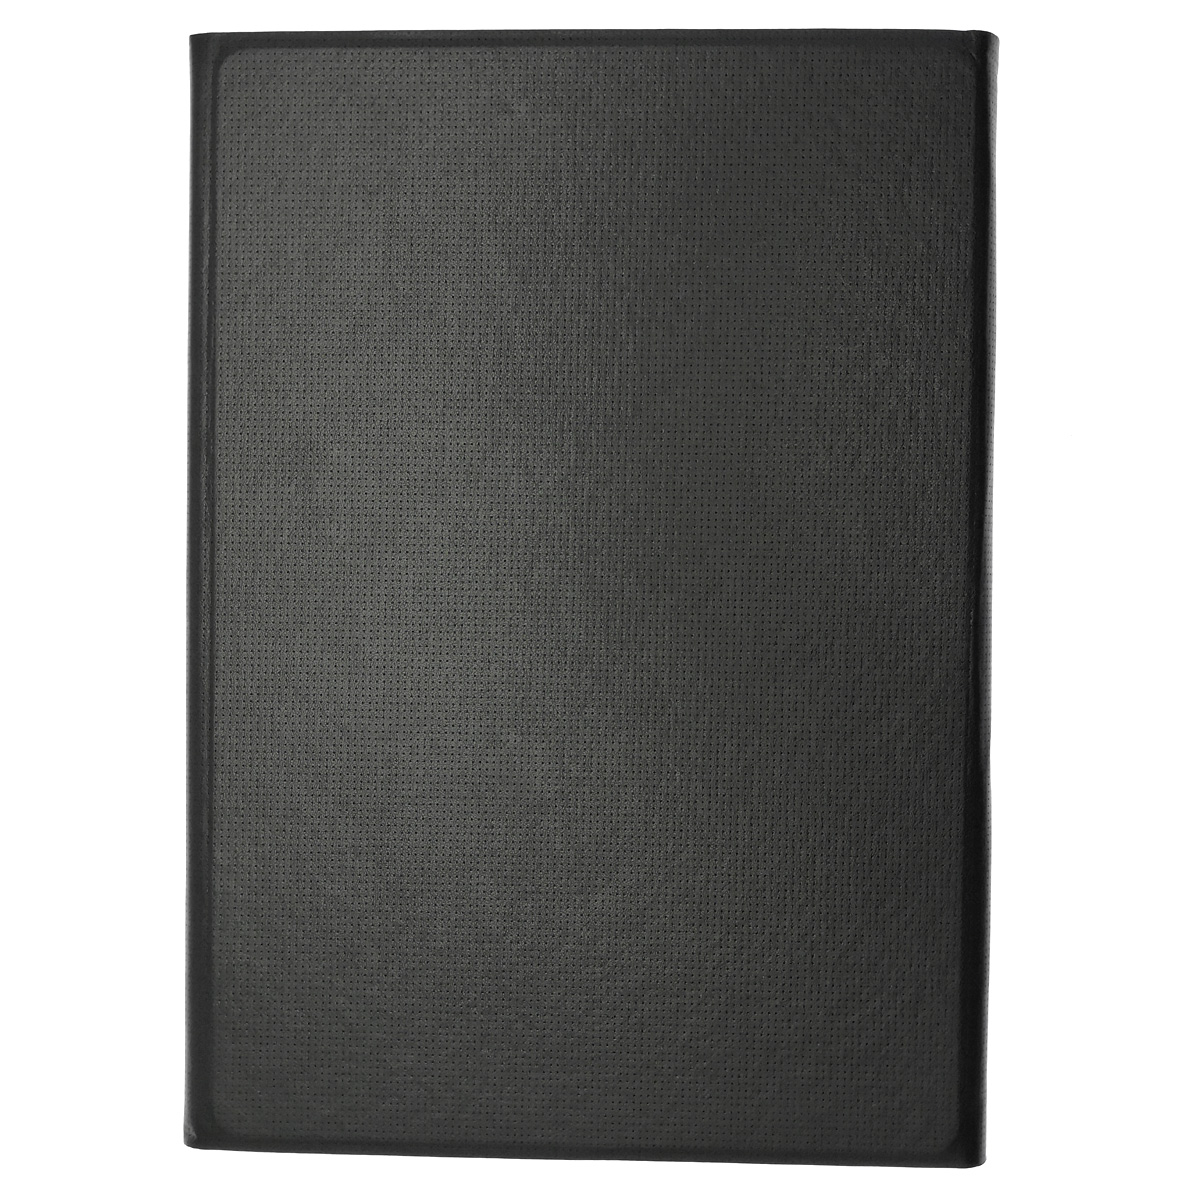 Чехол книжка Book Cover для планшета APPLE iPad 10.2" (MYLD2RU/A), экокожа, с магнитом, цвет черный